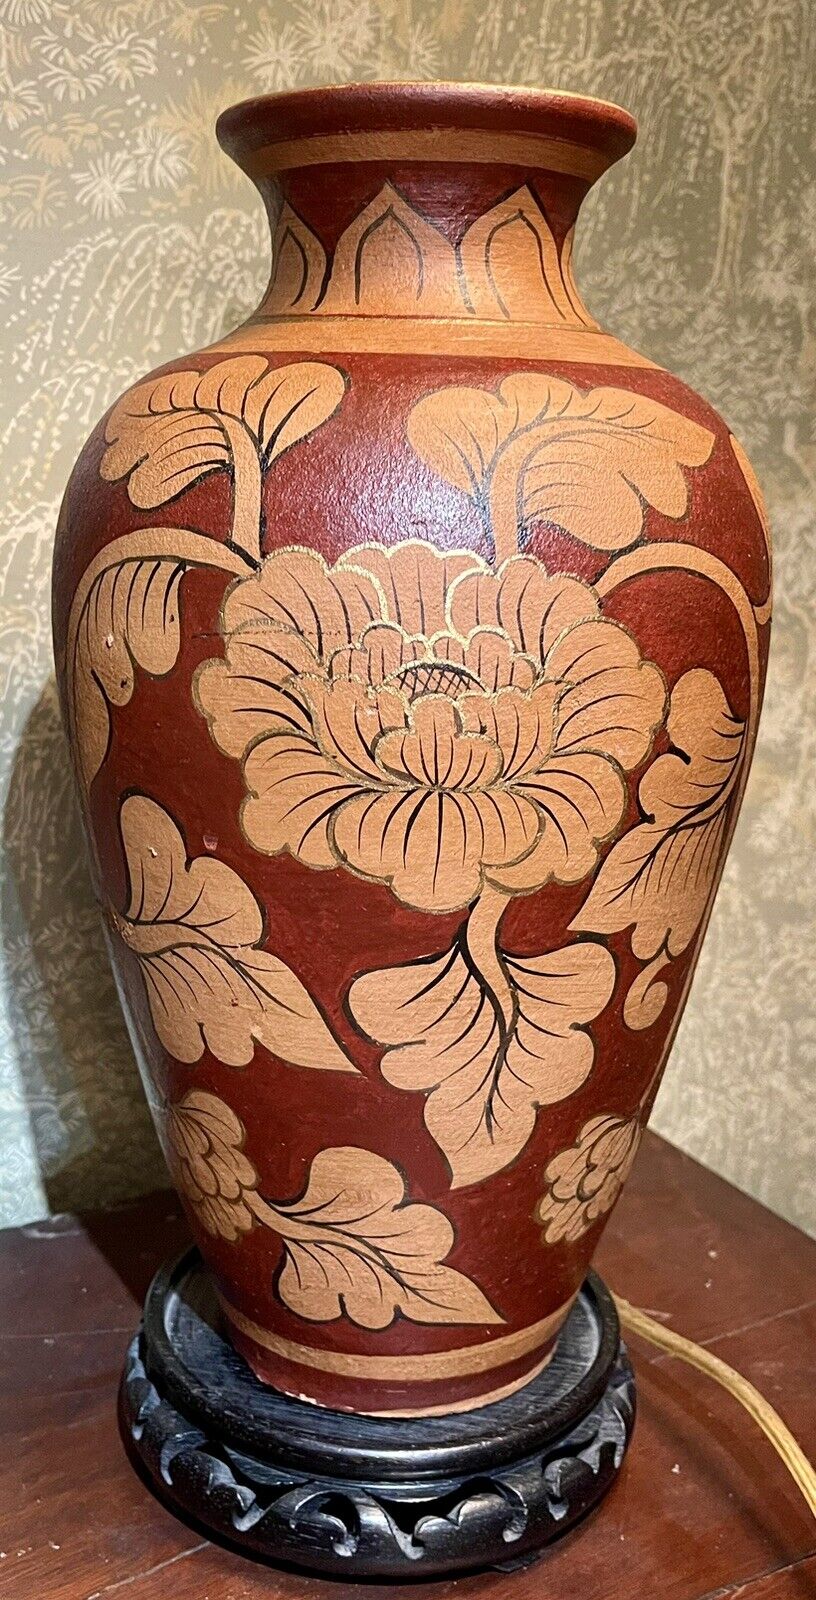 Reddish Brown Vase With Tan Floral Design, Gold & Black Edging, 13”